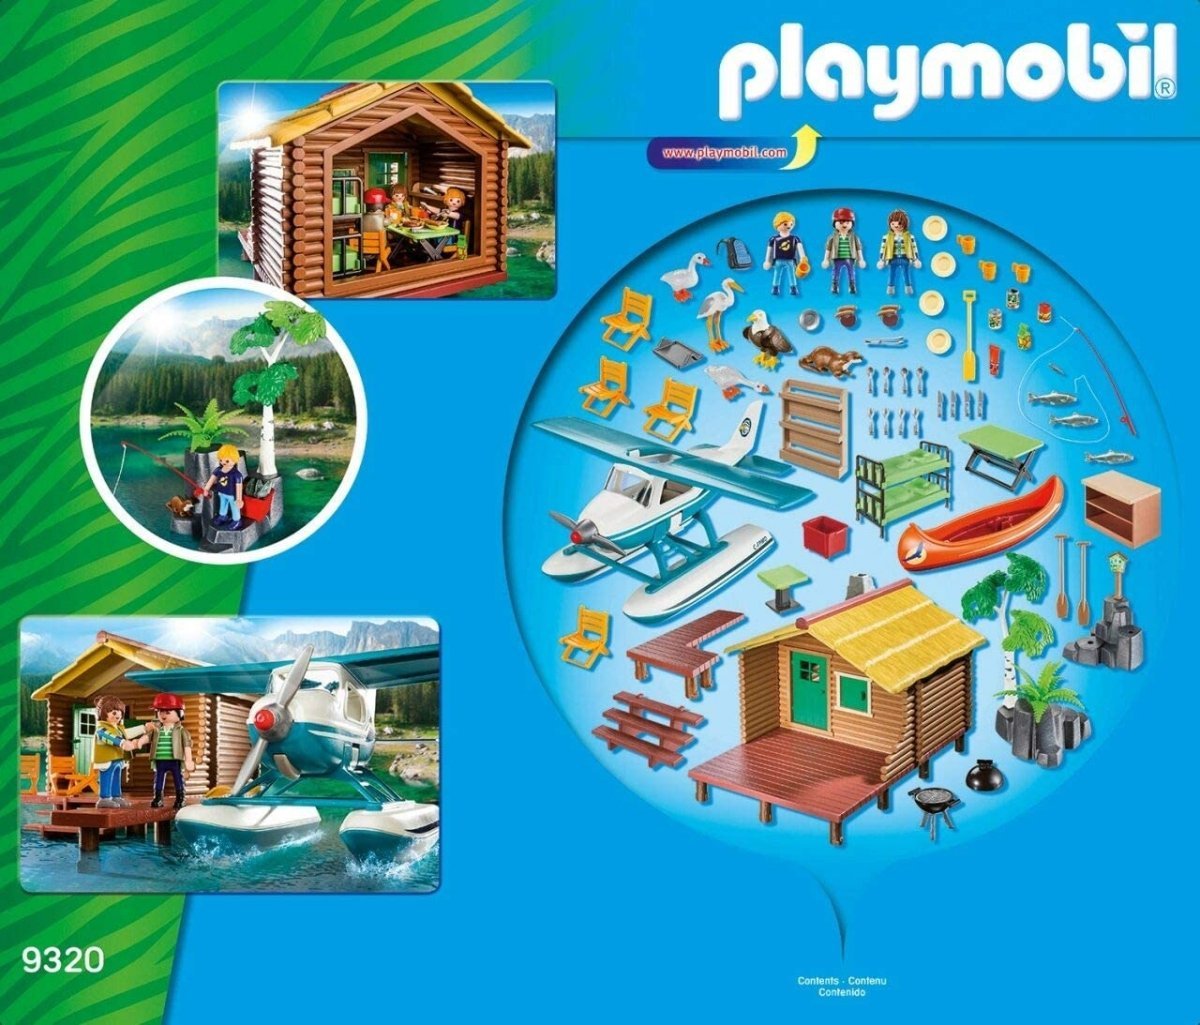 Cabane playmobil - Playmobil